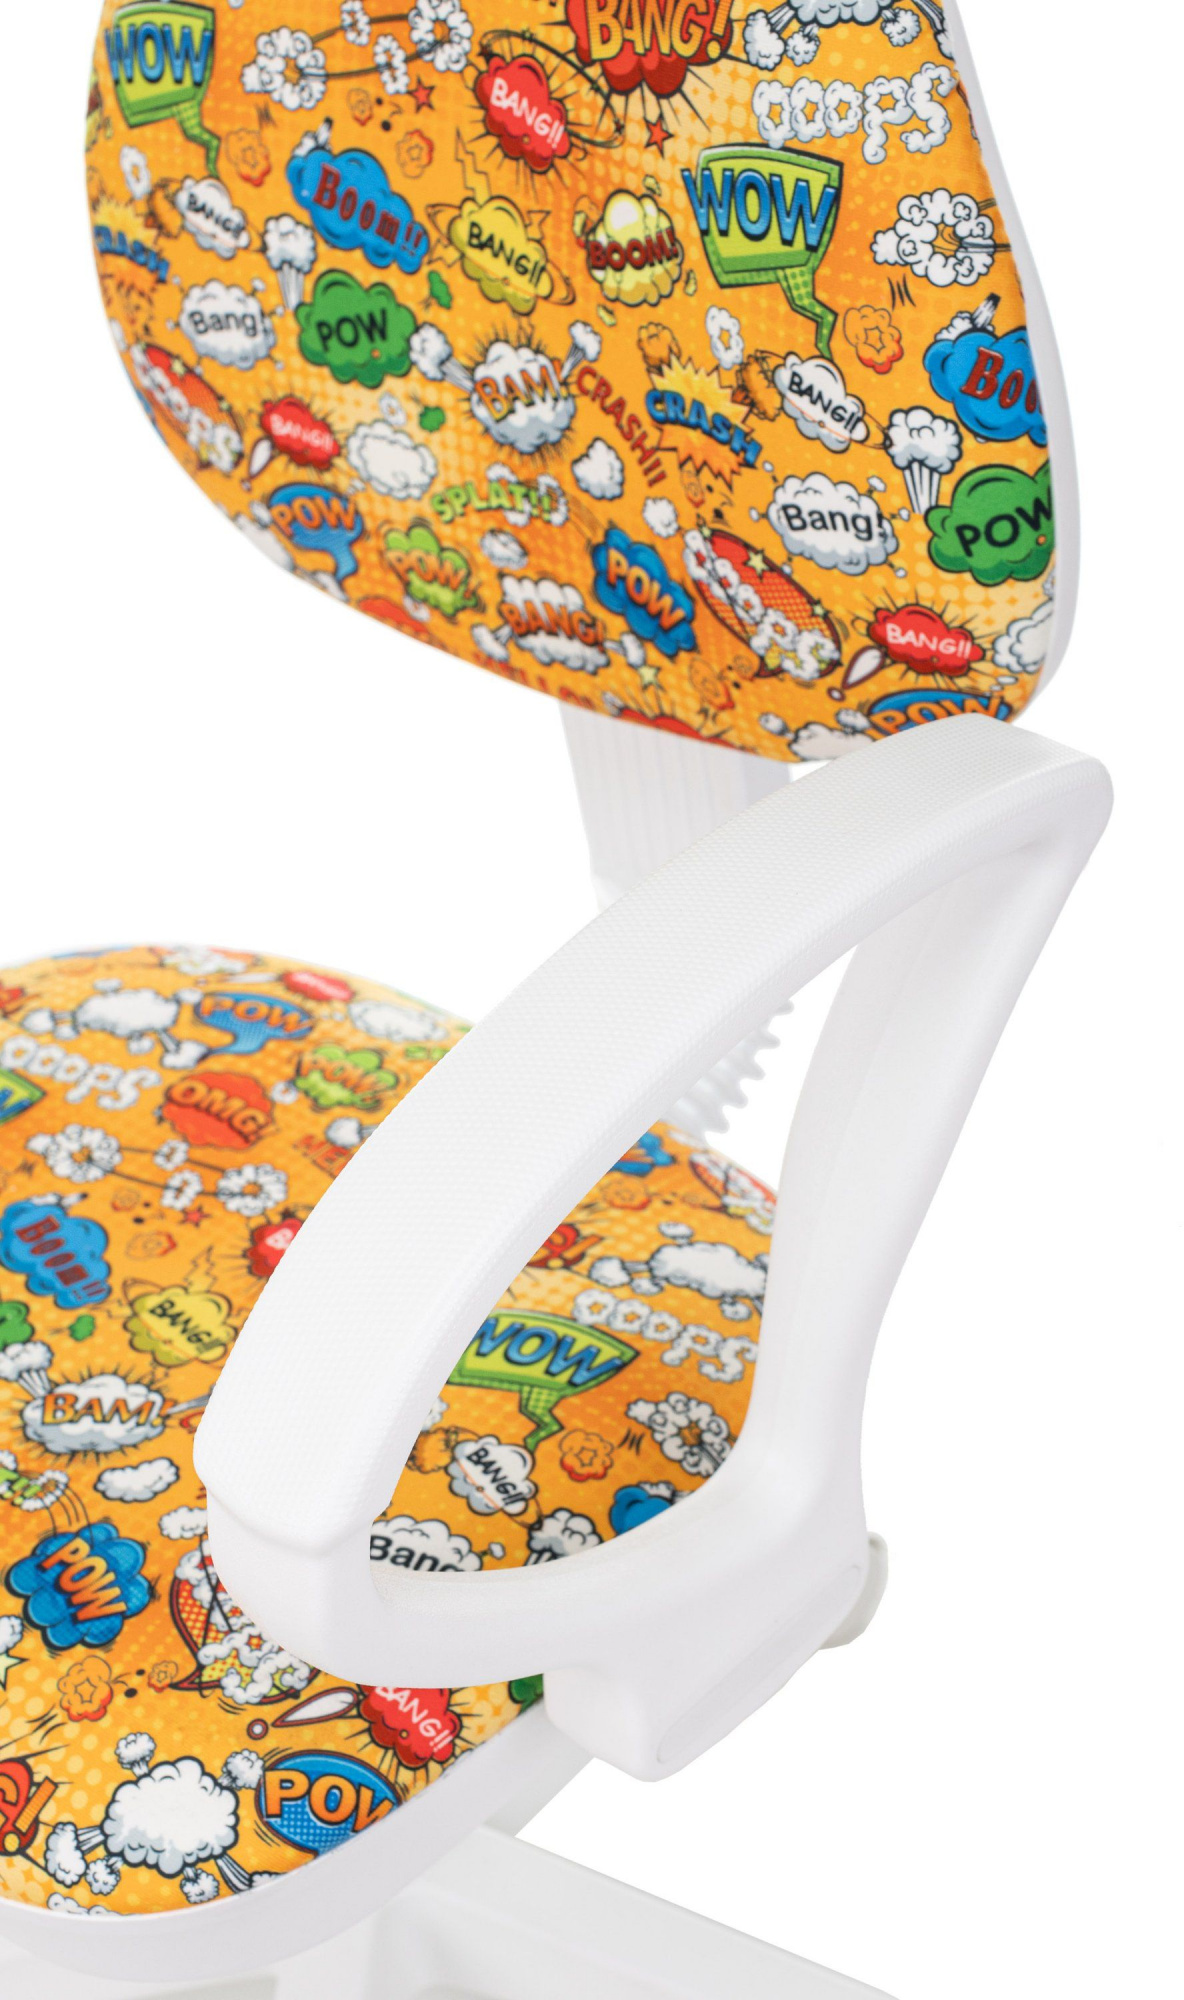 Кресло детское Бюрократ KD-3/WH/ARM оранжевый бэнг крестов. пластик пластик белый